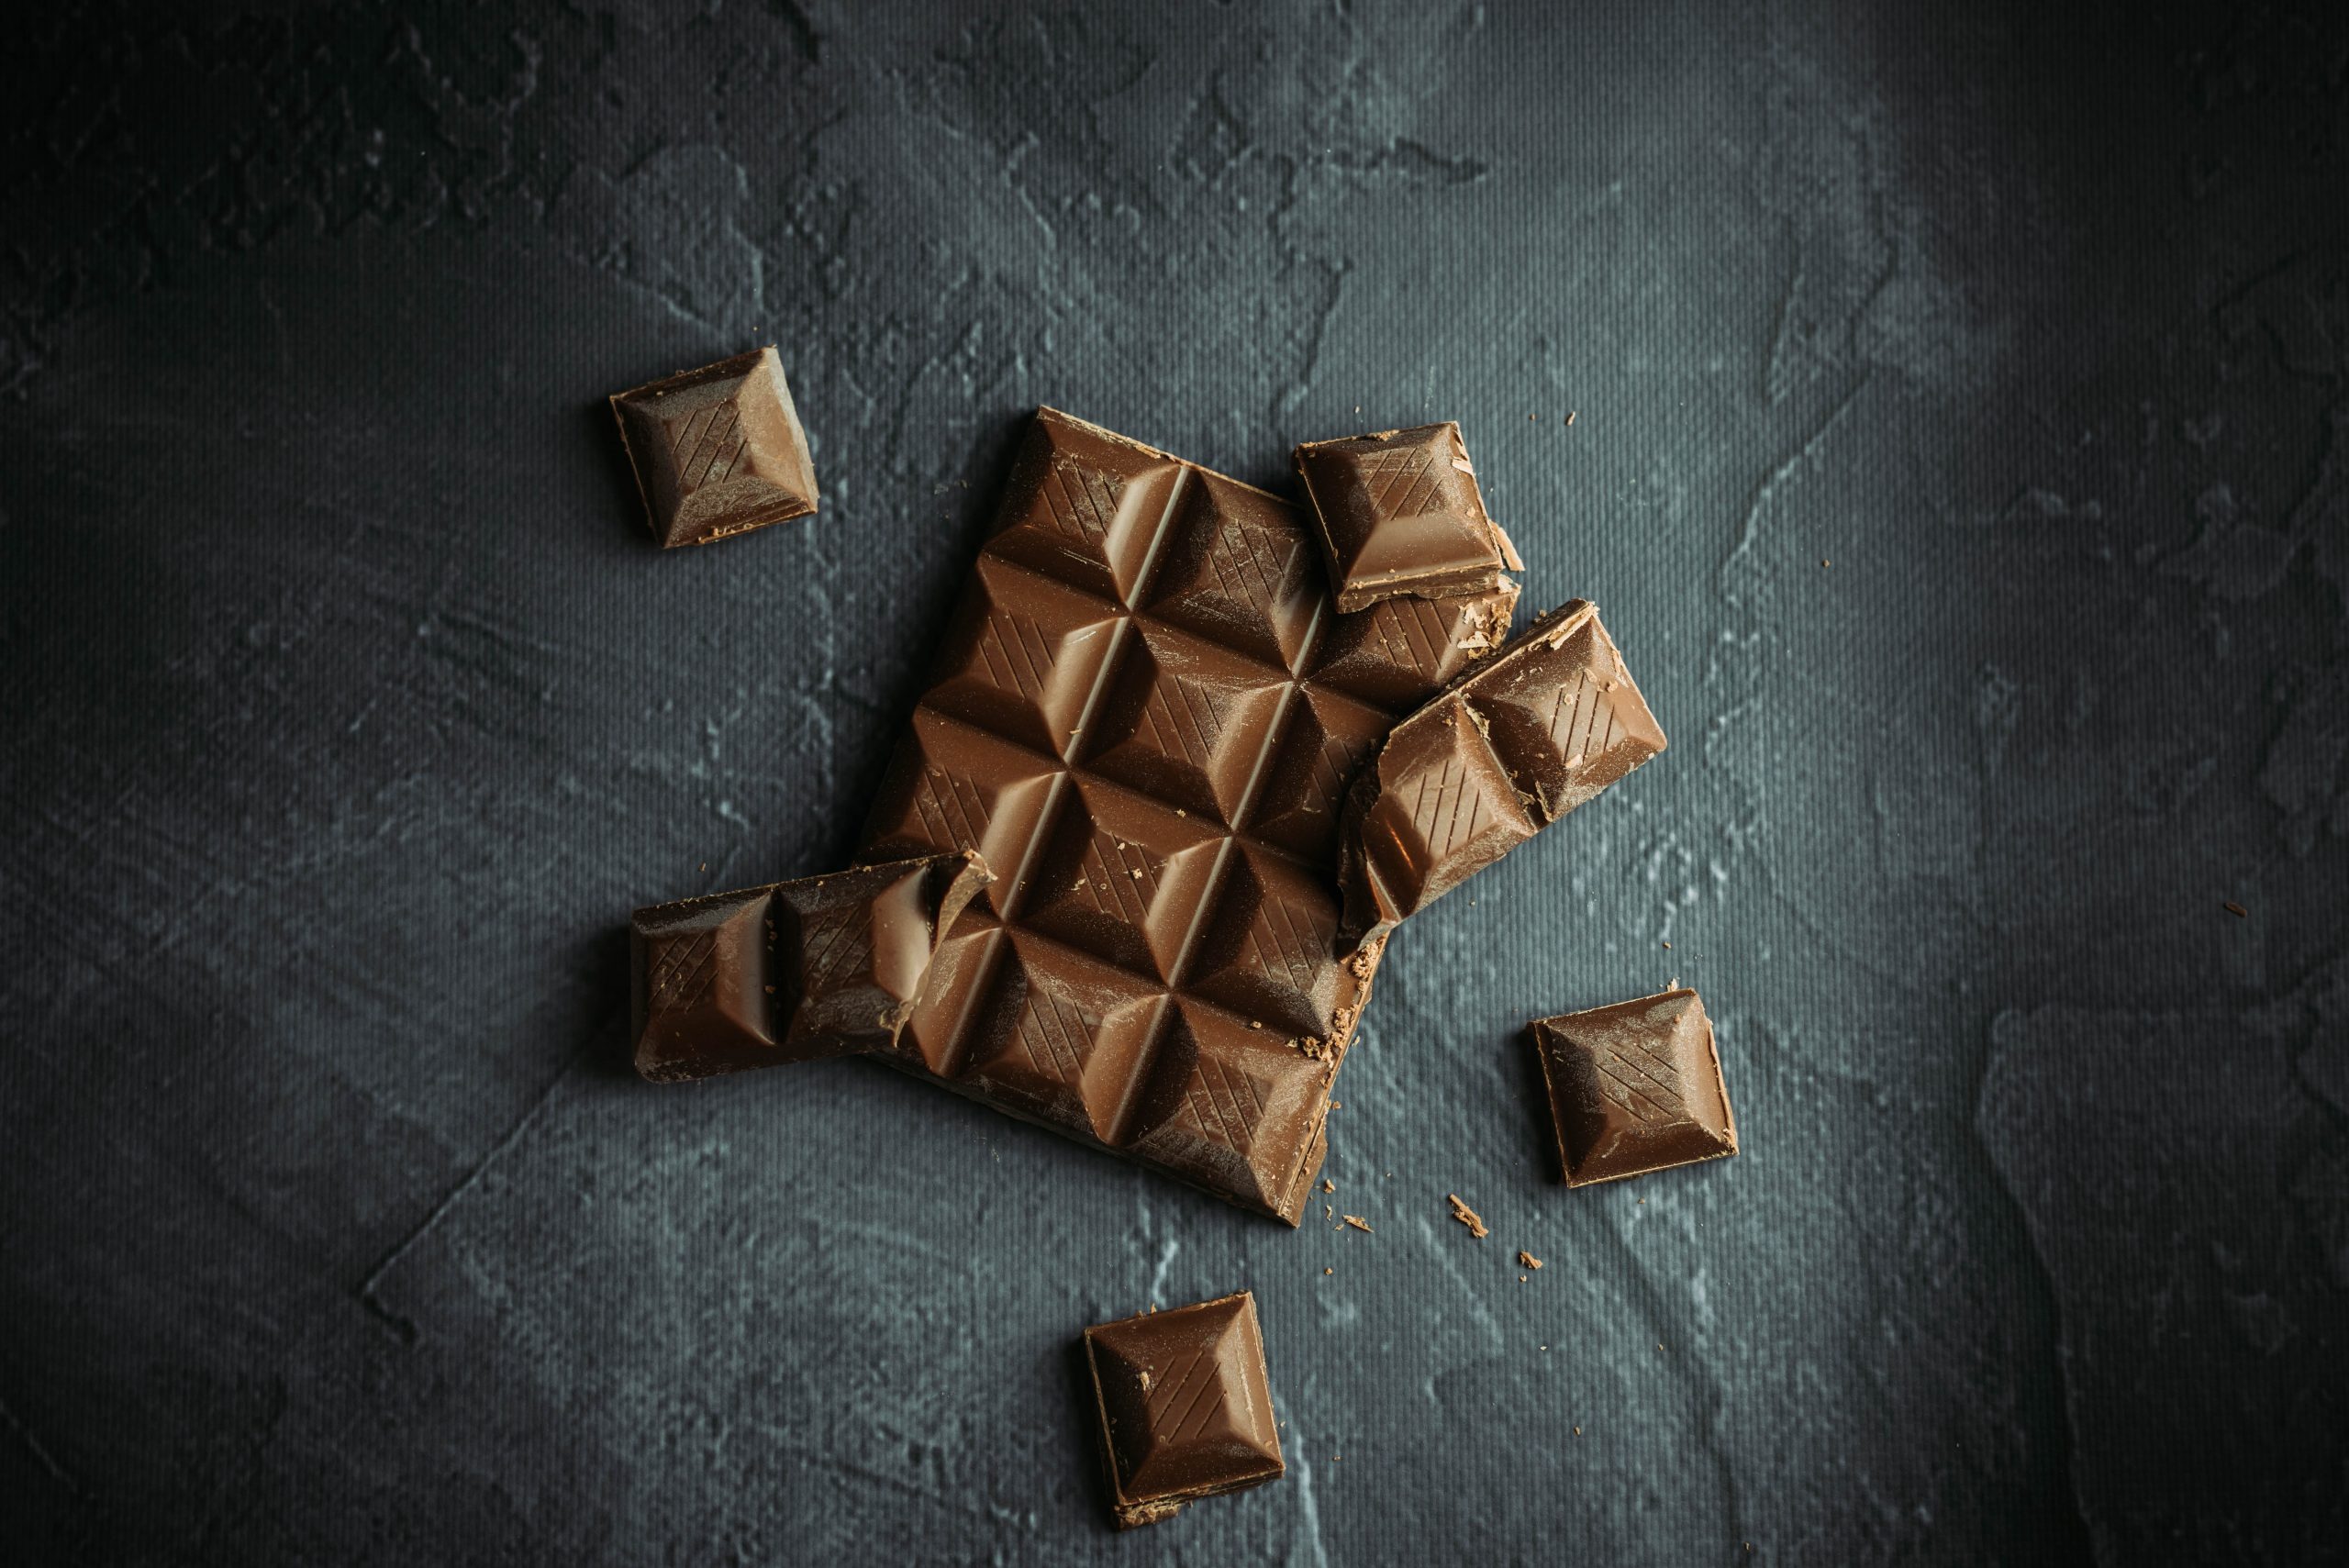  Dromen over chocolade onthult iets BELANGRIJKS in je LEVEN